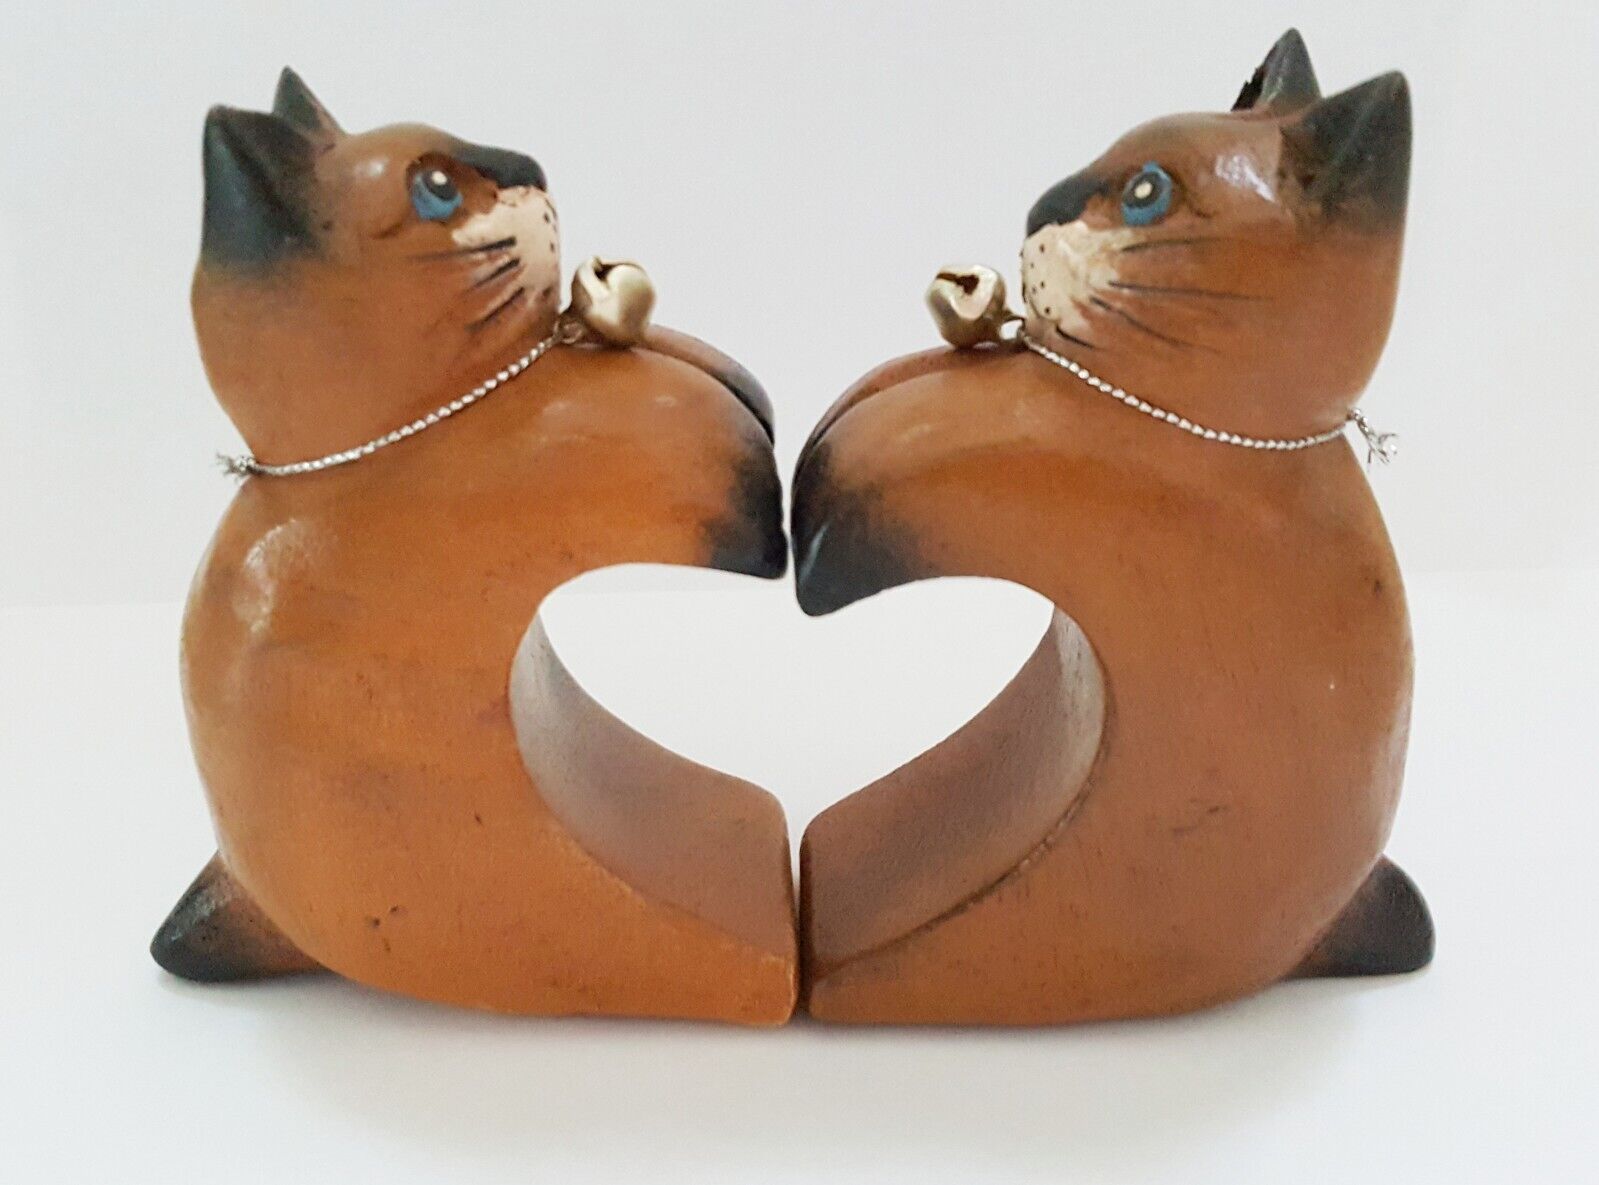 Set 2 Wood Tabby Cat Figurine Heart Love Lover Sitter Down Home Desk Decor Gift